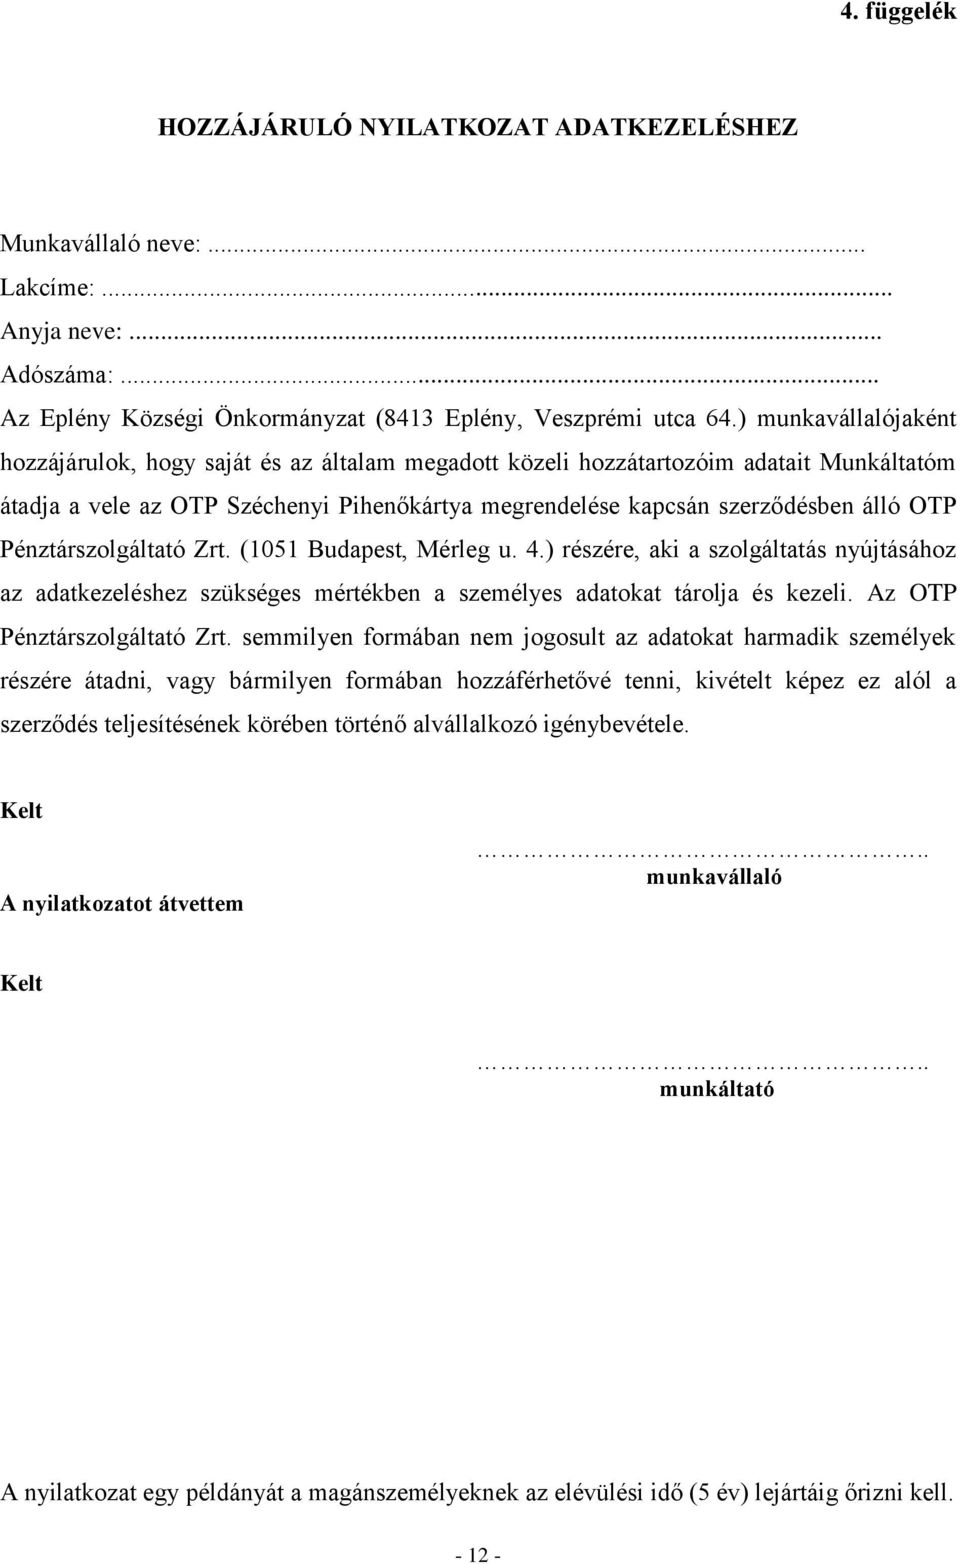 Pénztárszolgáltató Zrt. (1051 Budapest, Mérleg u. 4.) részére, aki a szolgáltatás nyújtásához az adatkezeléshez szükséges mértékben a személyes adatokat tárolja és kezeli.